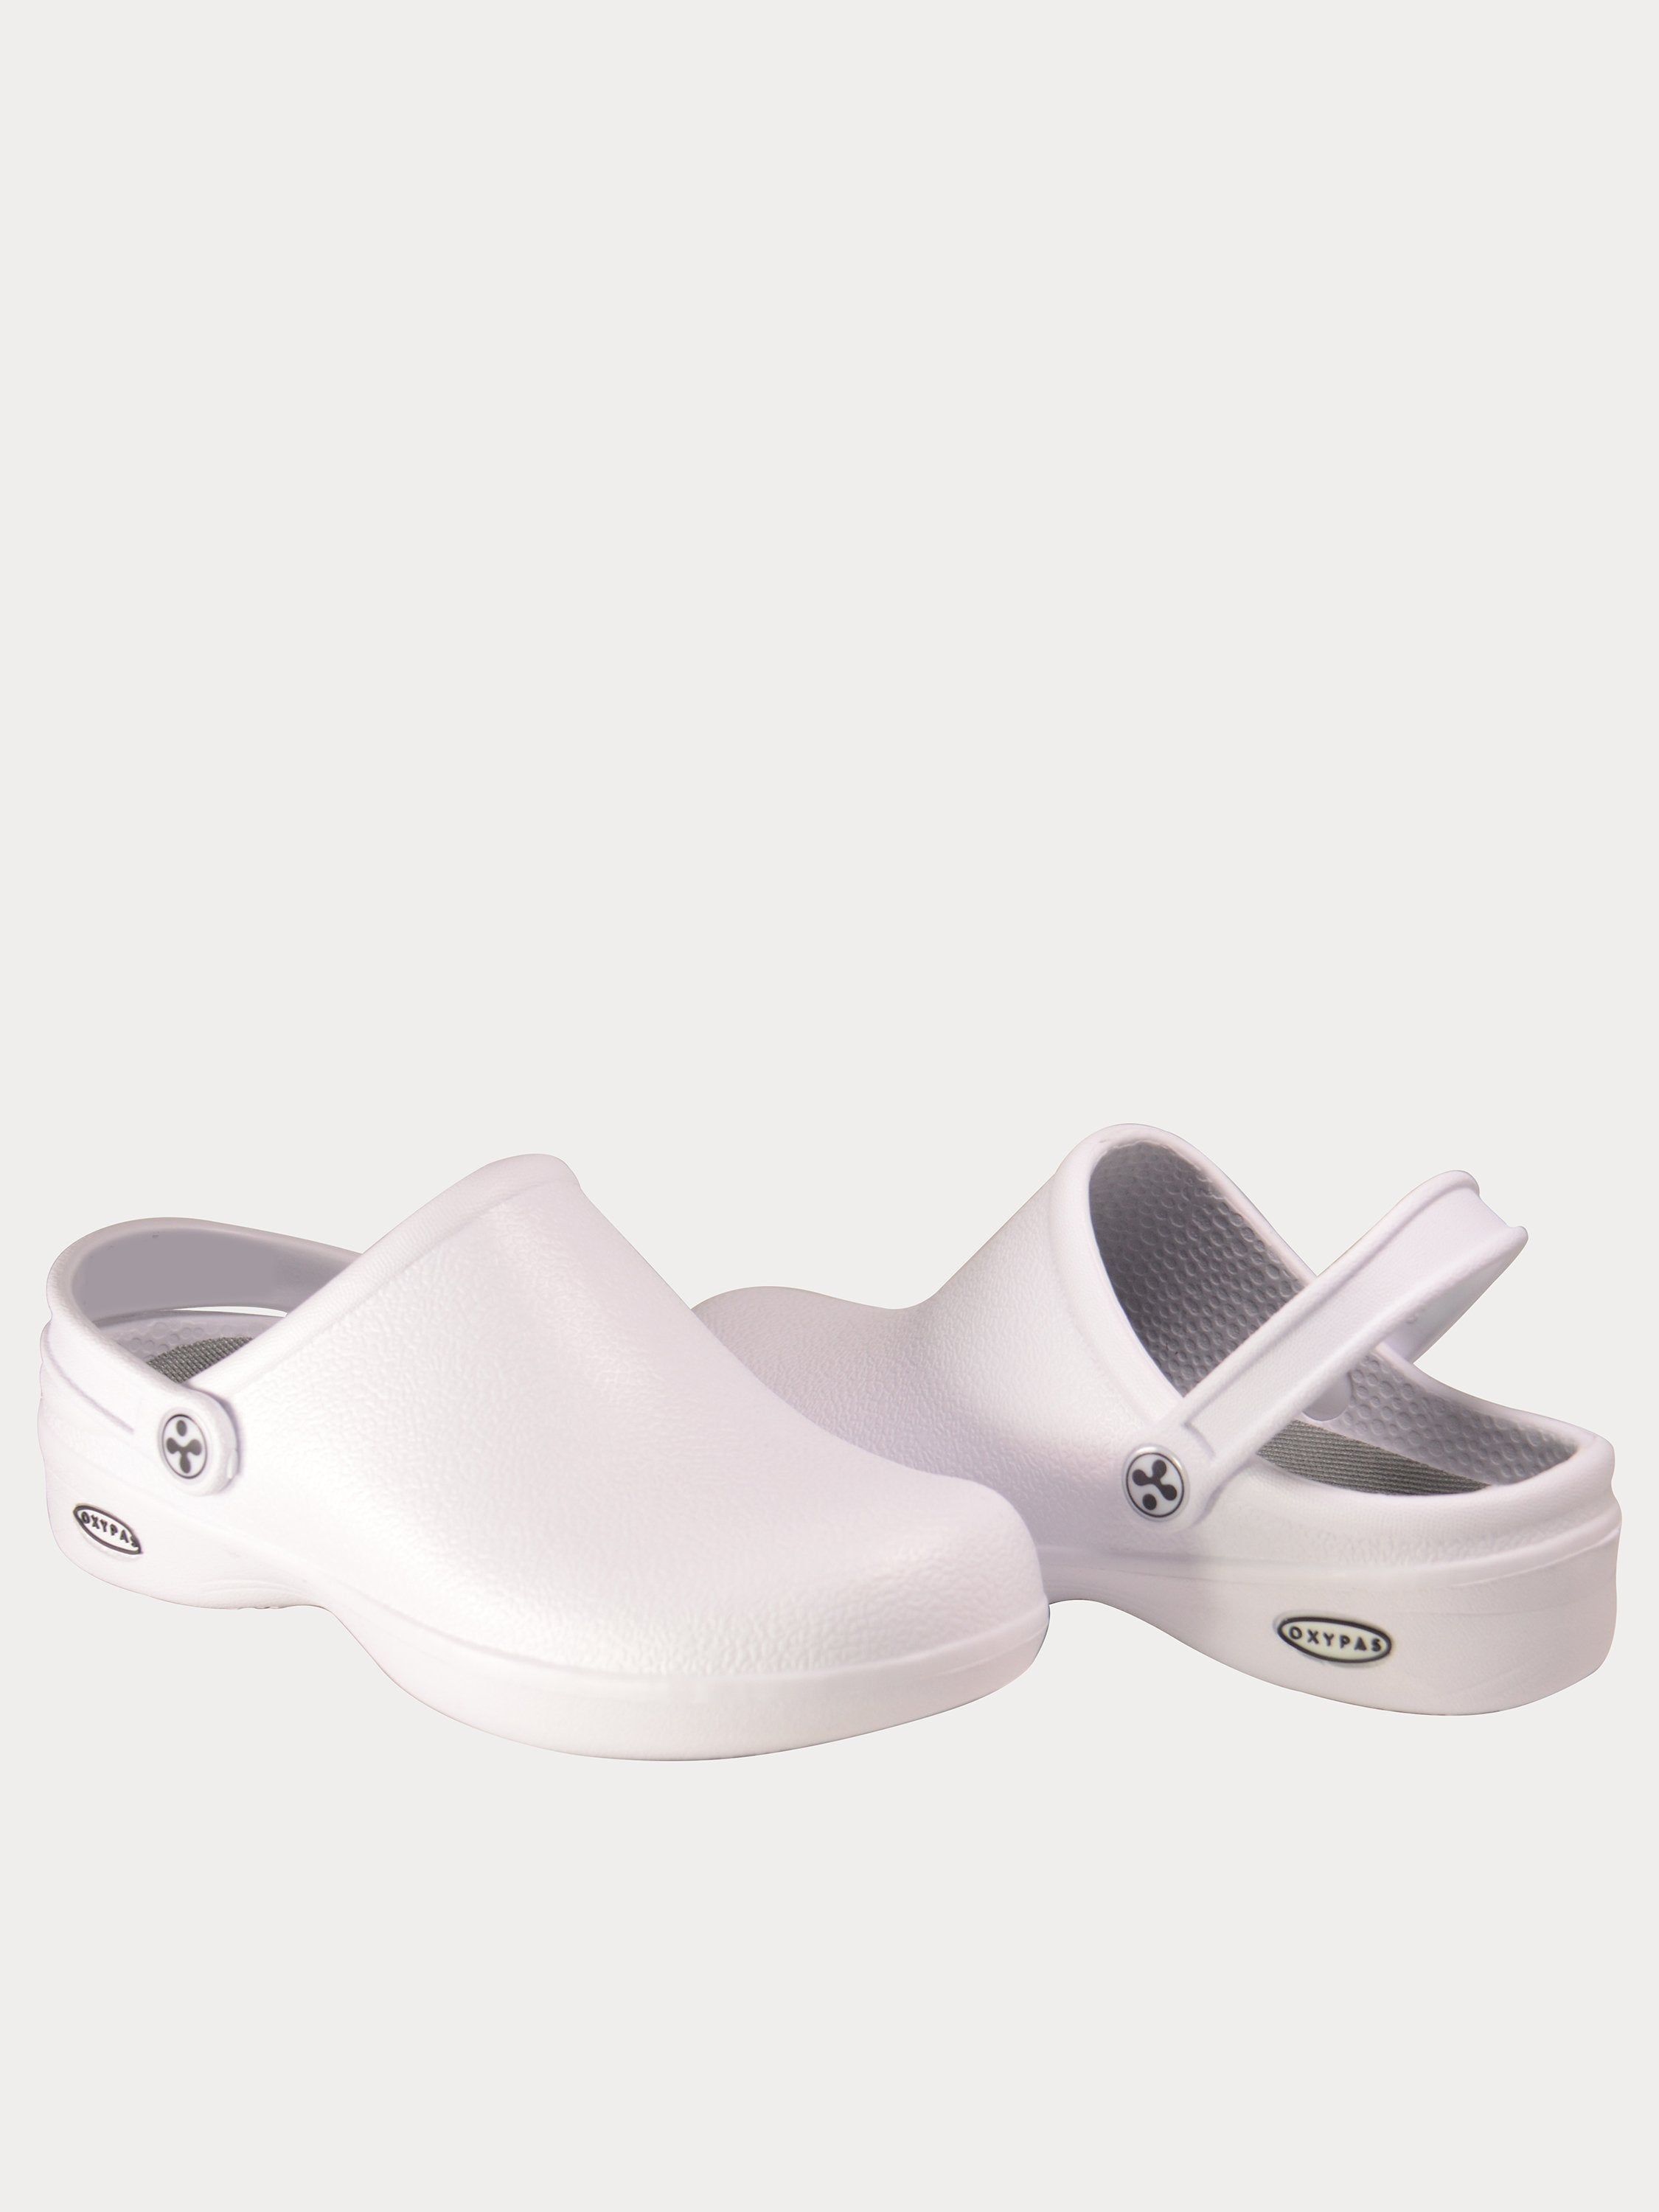 Oxypas Men's Bestlight 1 Safety Mule Shoes #color_White